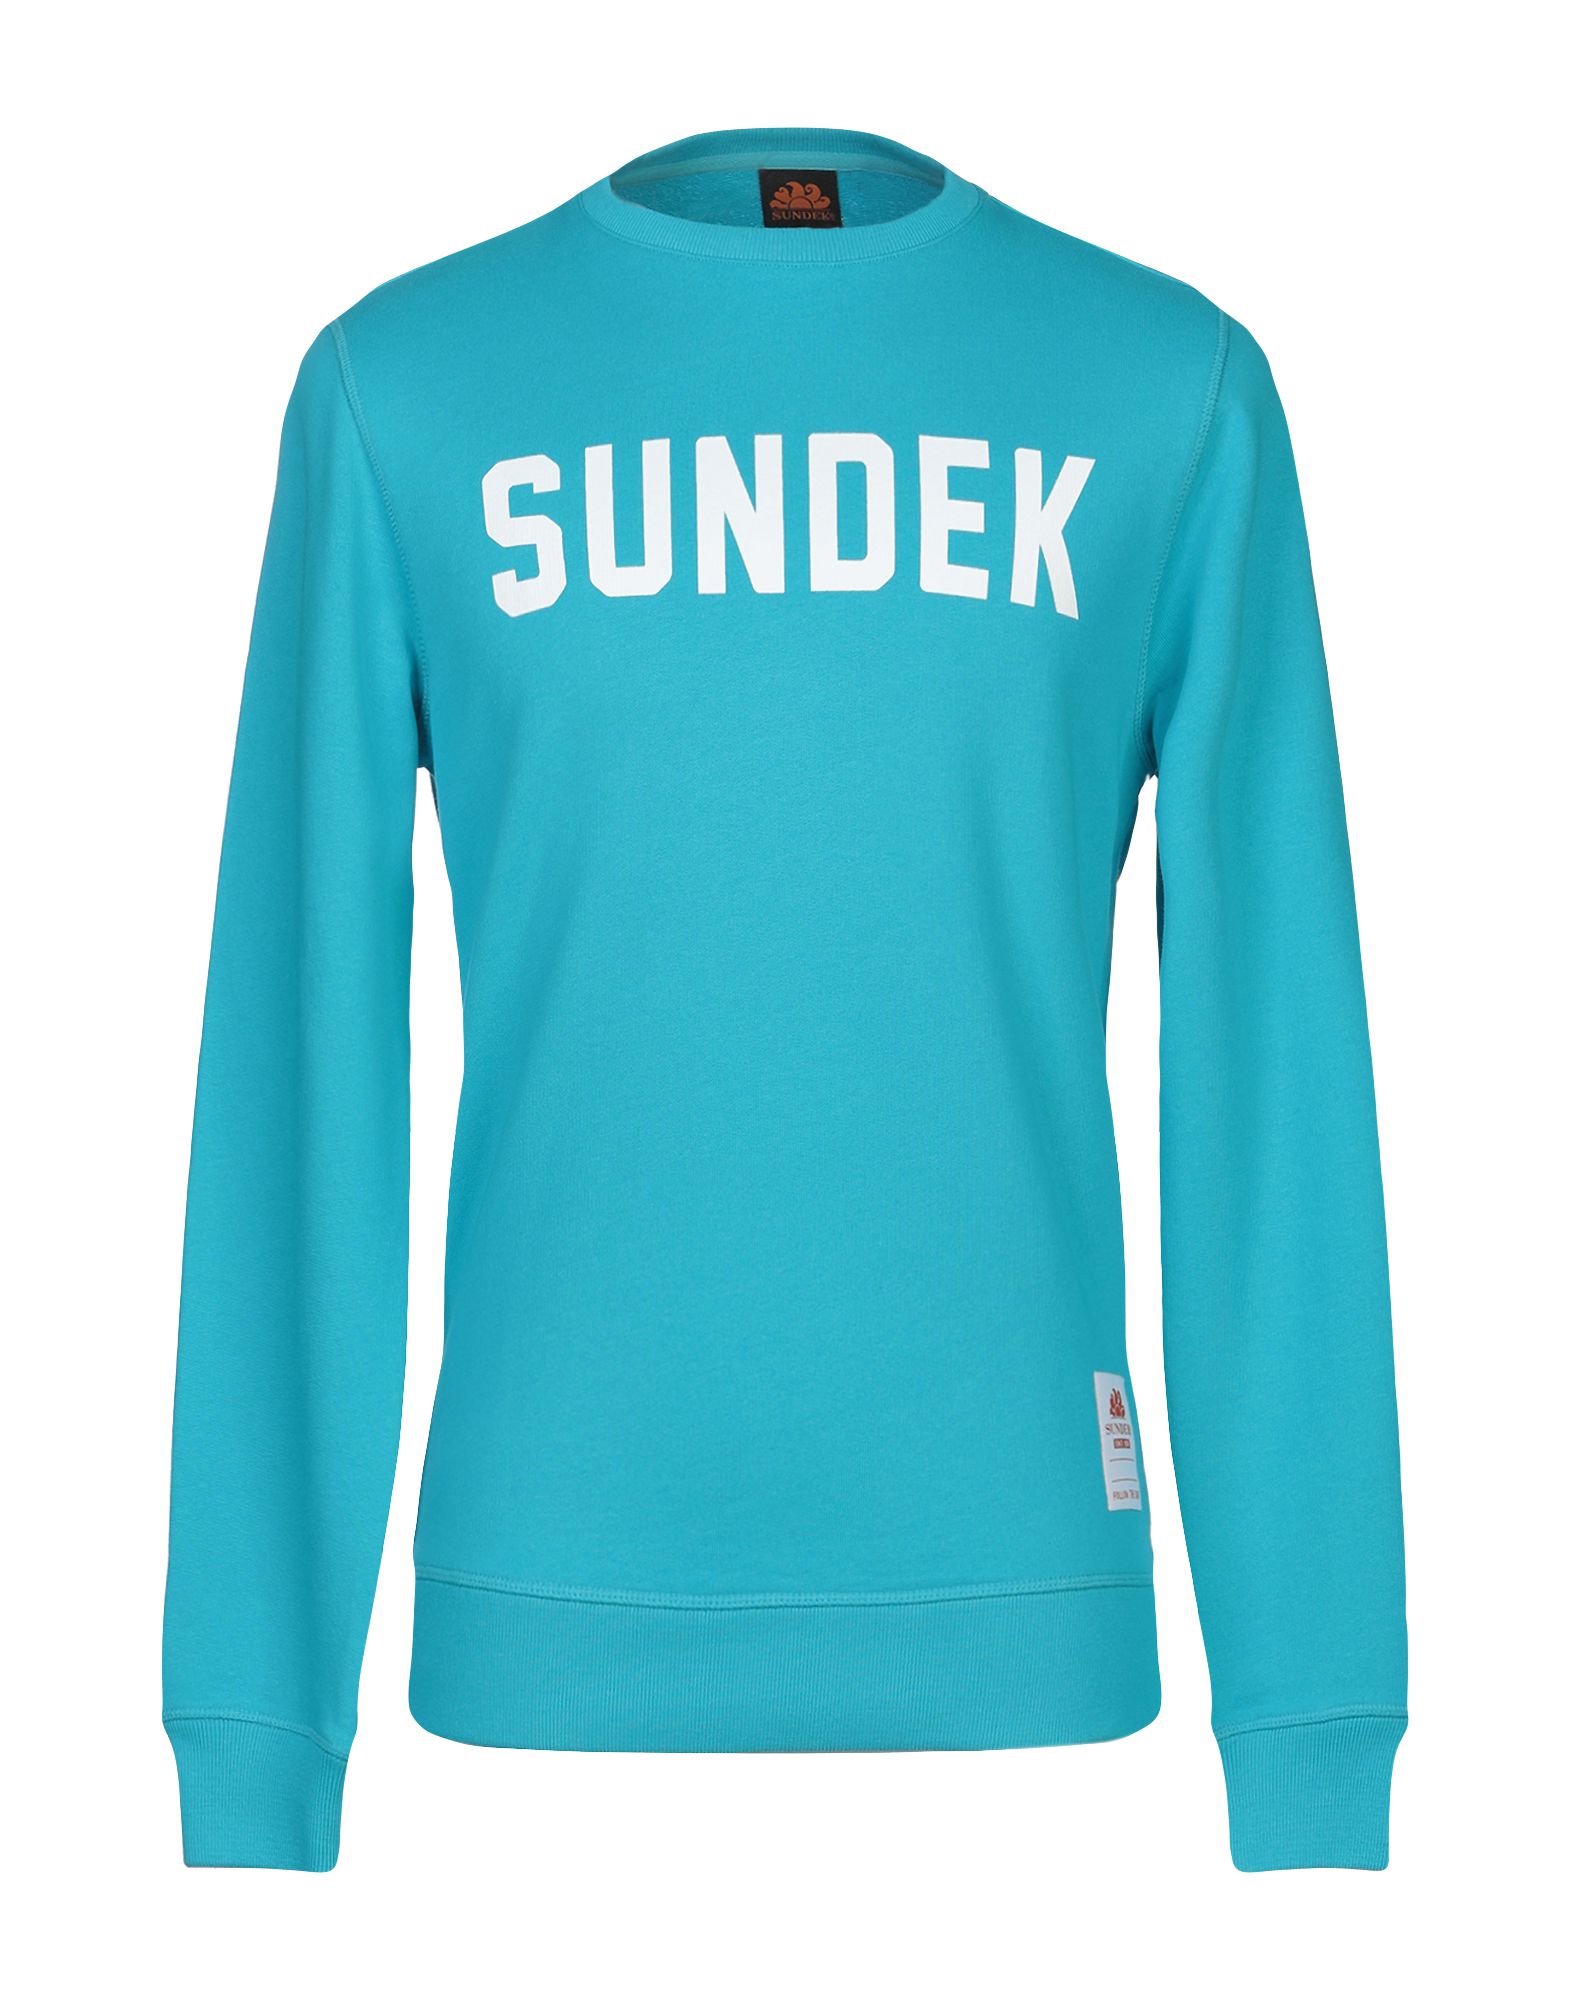 《送料無料》SUNDEK メンズ スウェットシャツ ターコイズブルー M コットン 100%